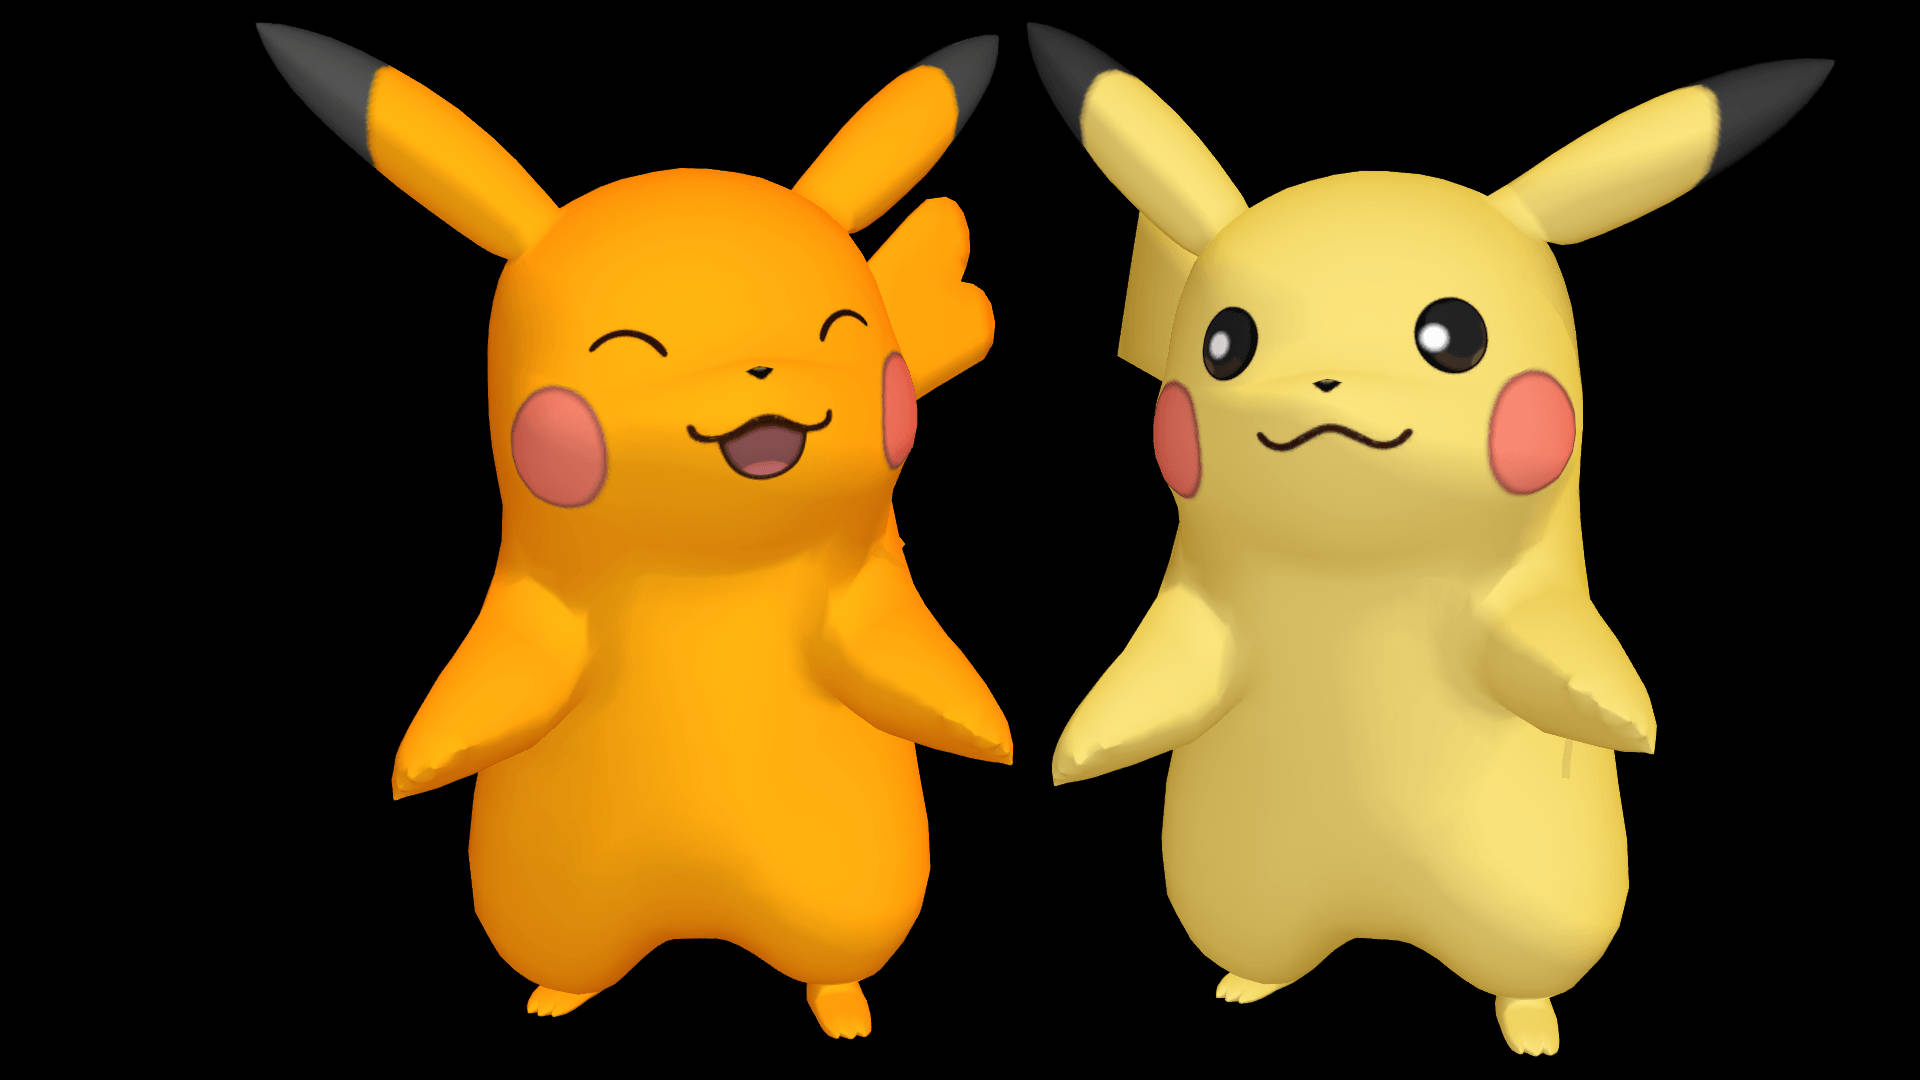 Pikachu 3d Shiny Pokémons Wallpaper